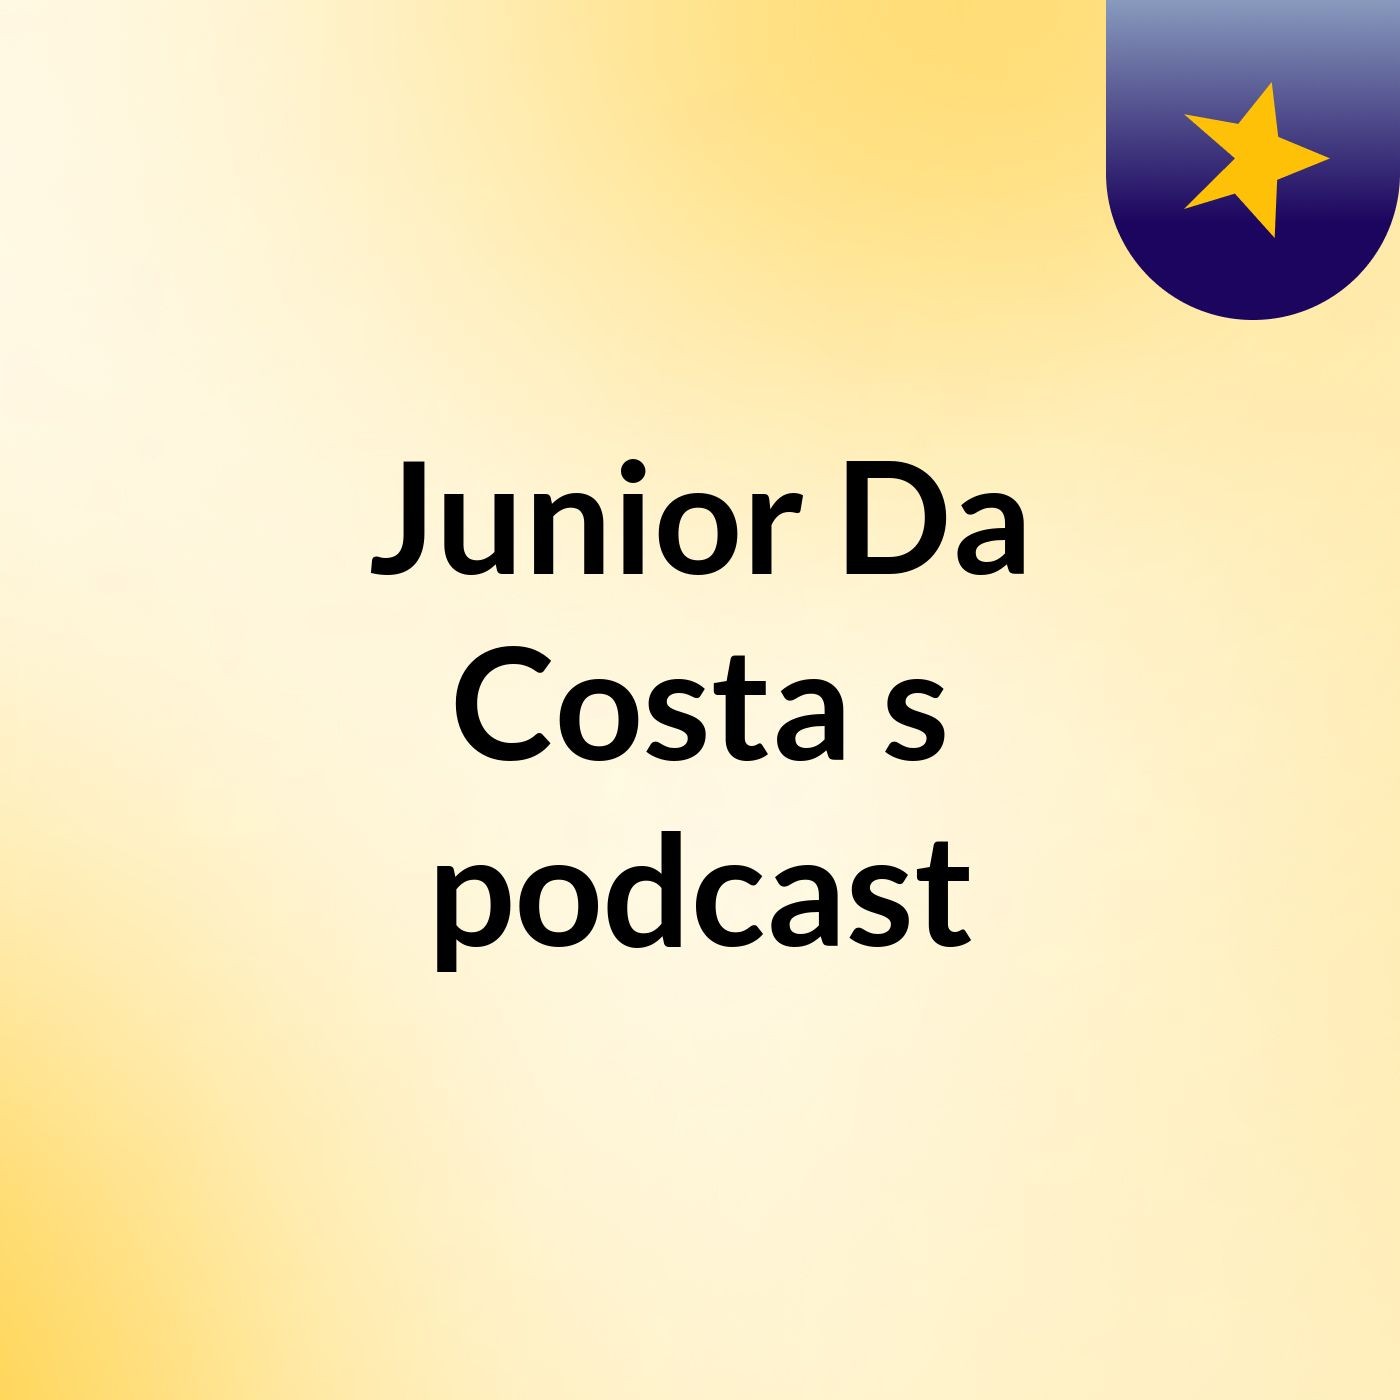 Episode 4 - Junior Da Costa's podcast